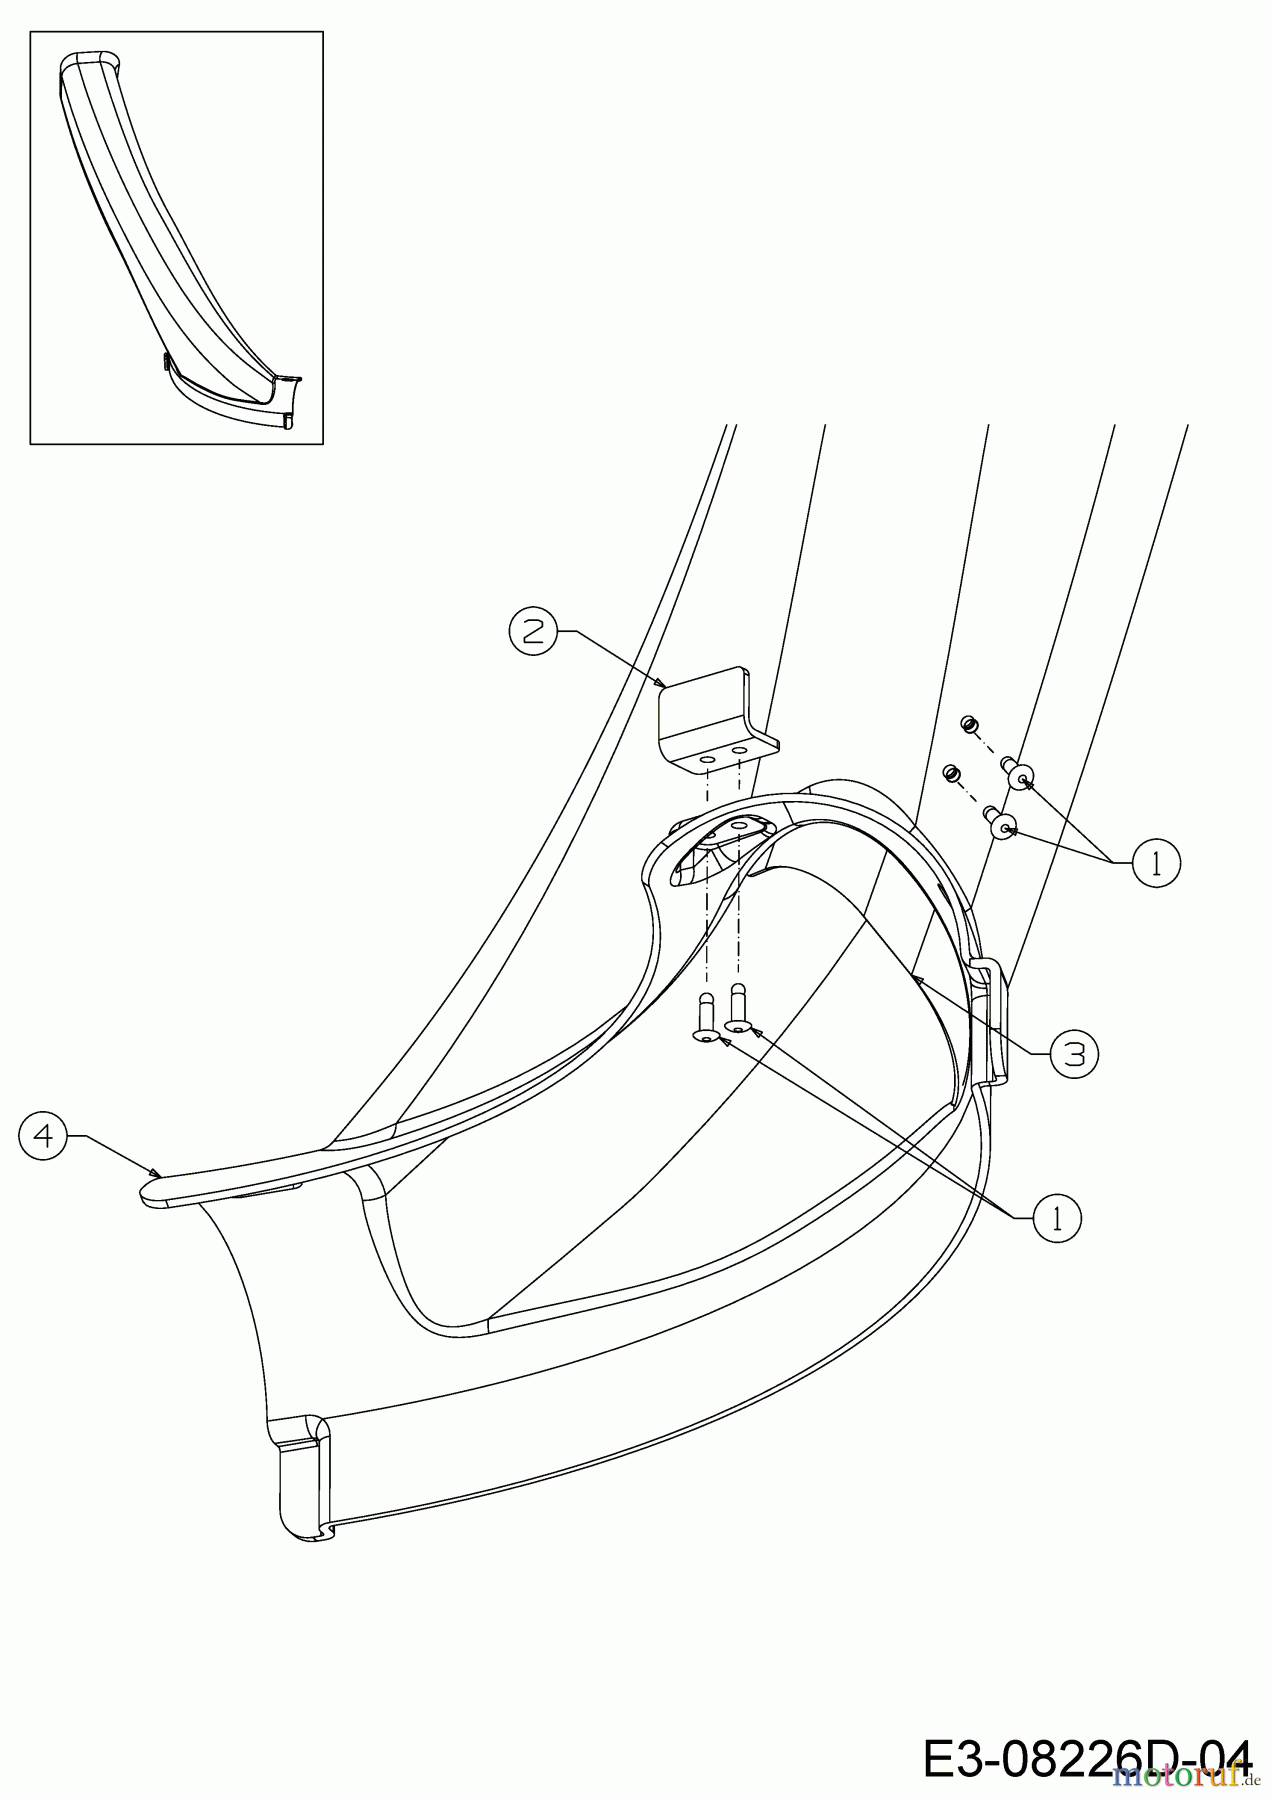  WOLF-Garten Expert Rasentraktoren Expert Scooter Pro Hydro 13A221HD650  (2016) Auswurfschacht